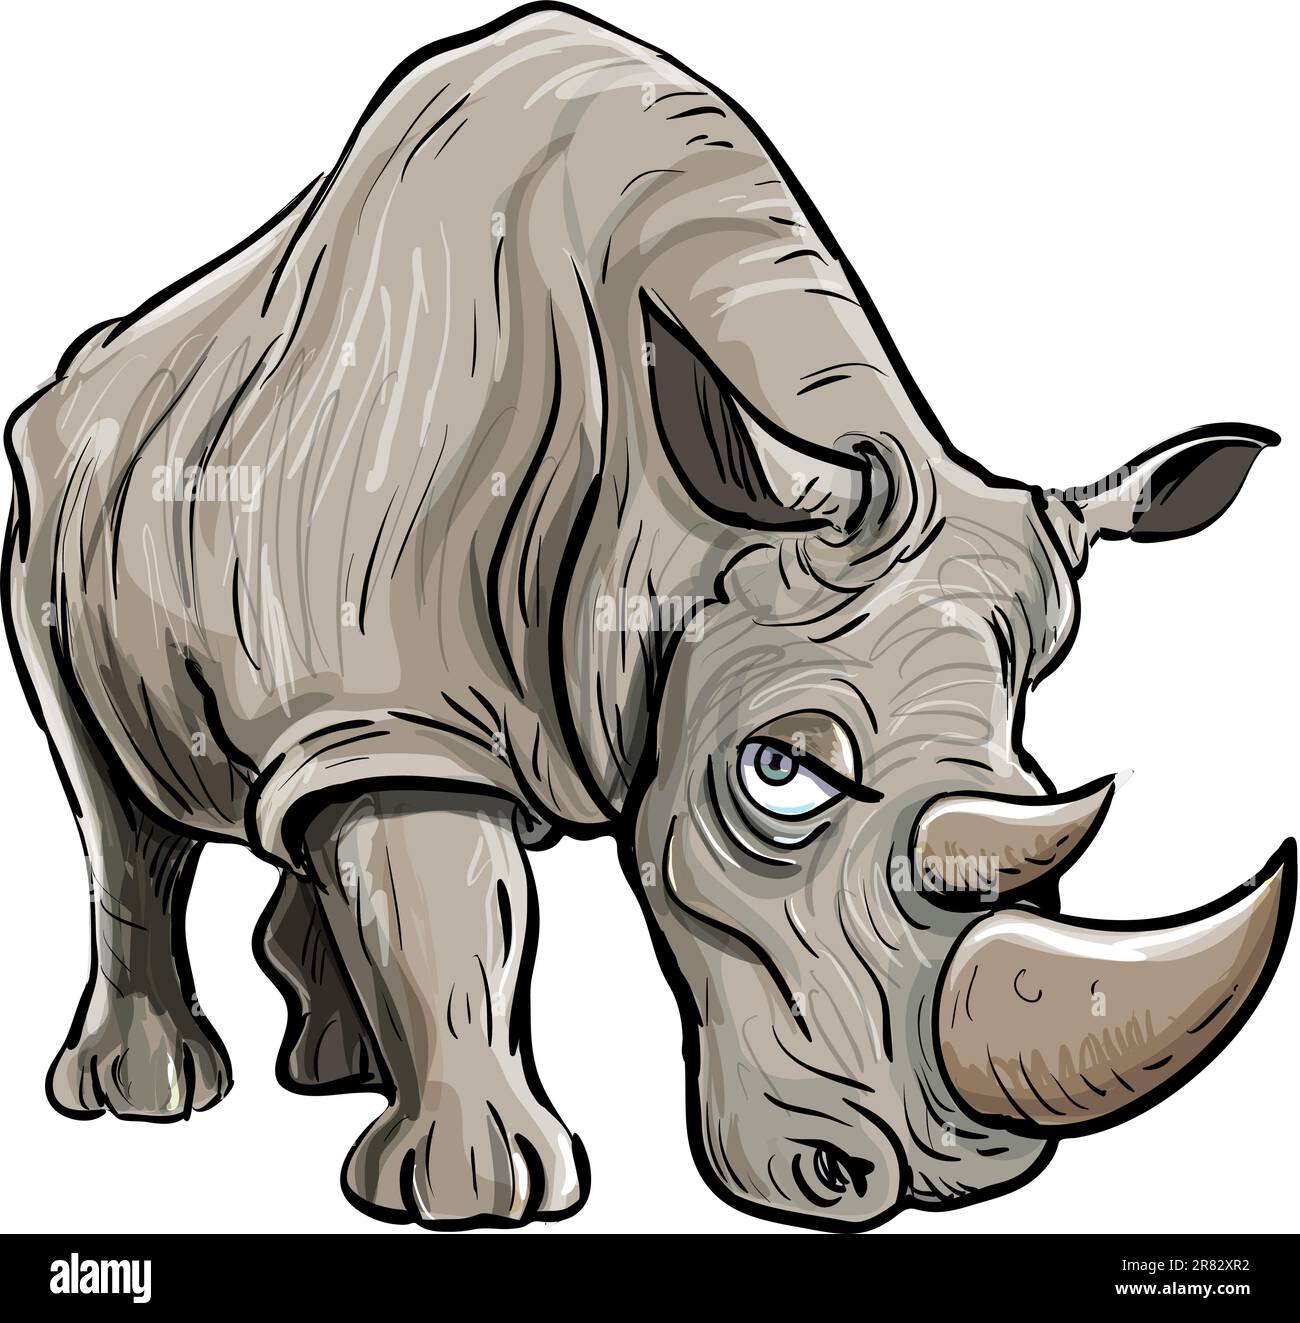 Illustrazione a cartoni animati di un rinoceronte. Isolato Illustrazione Vettoriale